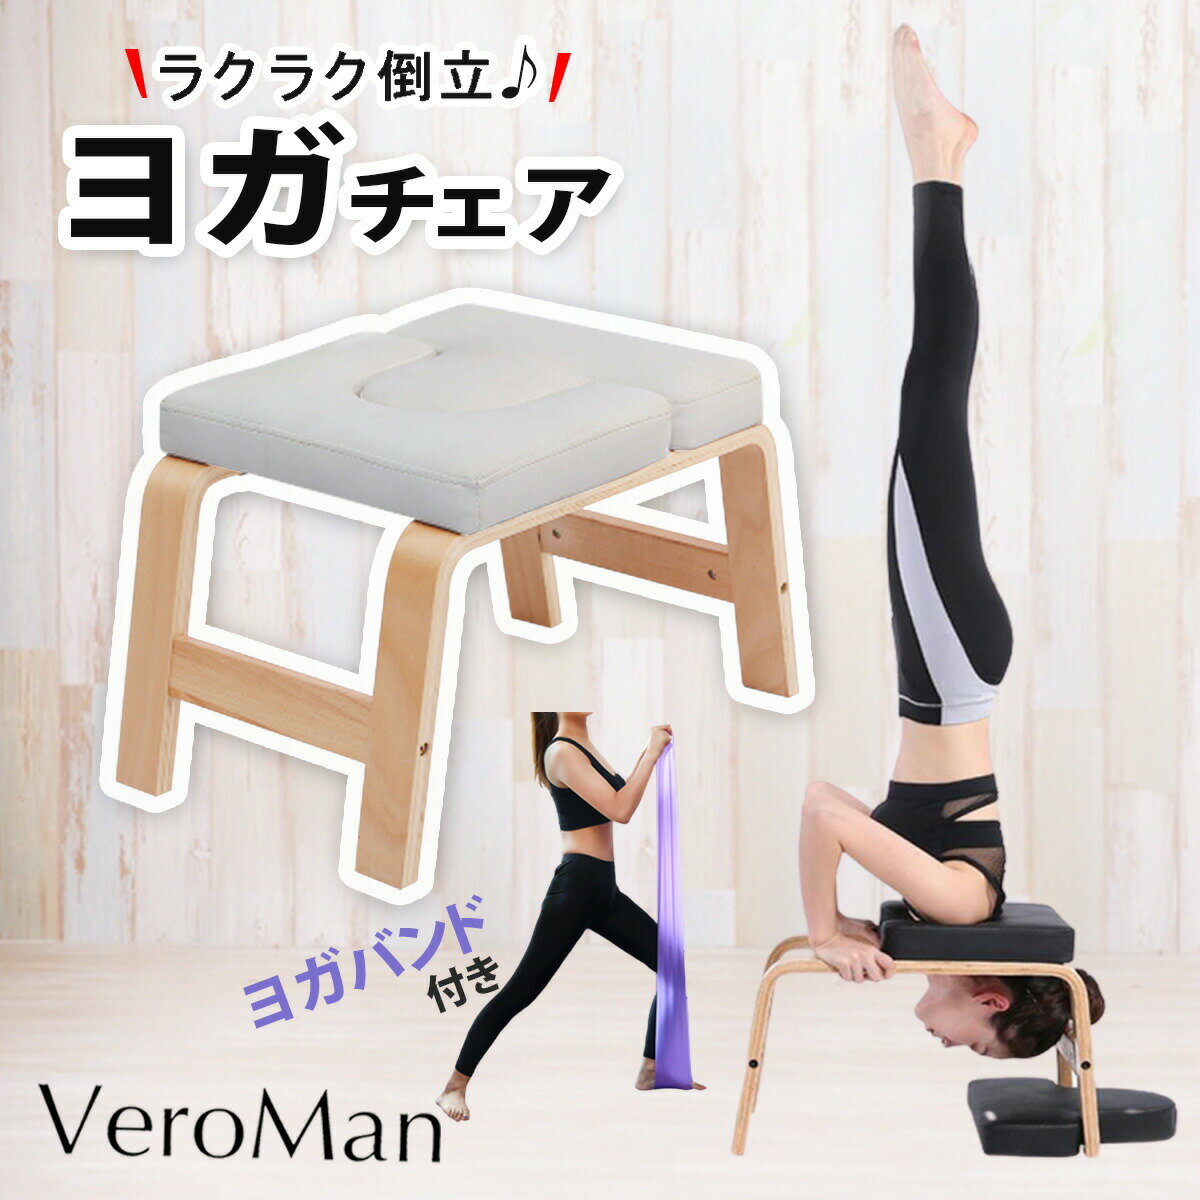 ヨガチェア 倒立椅子 ヨガ 逆立ち 椅子 ヨガバンド付き 木製 VeroMan #PPI